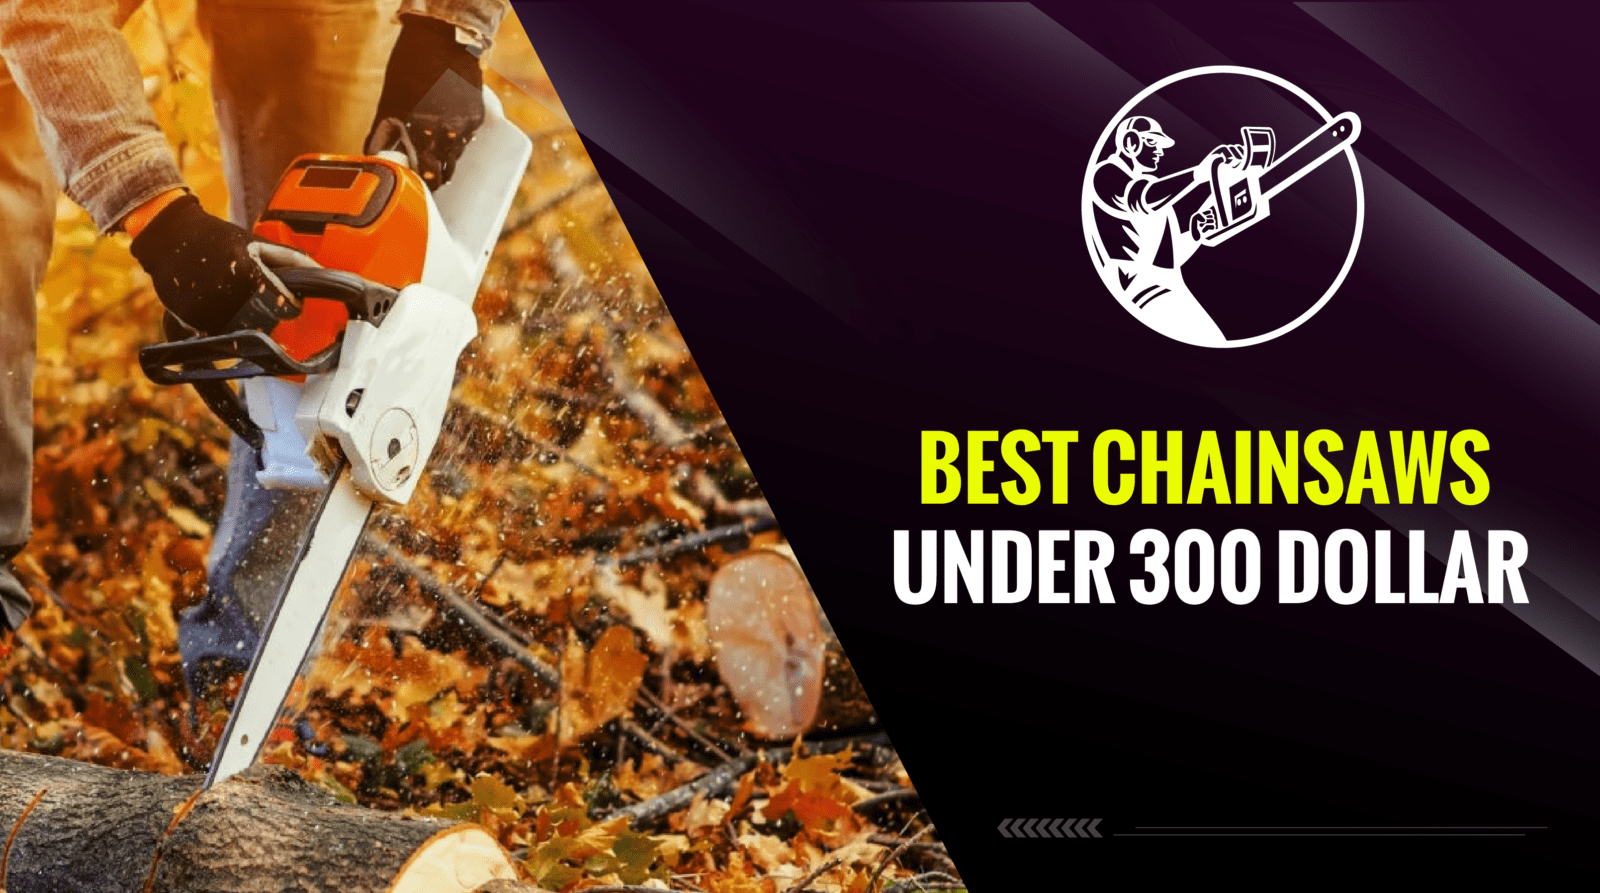 Best Chainsaws Under 300 Dollar - Our Top 6 Picks!